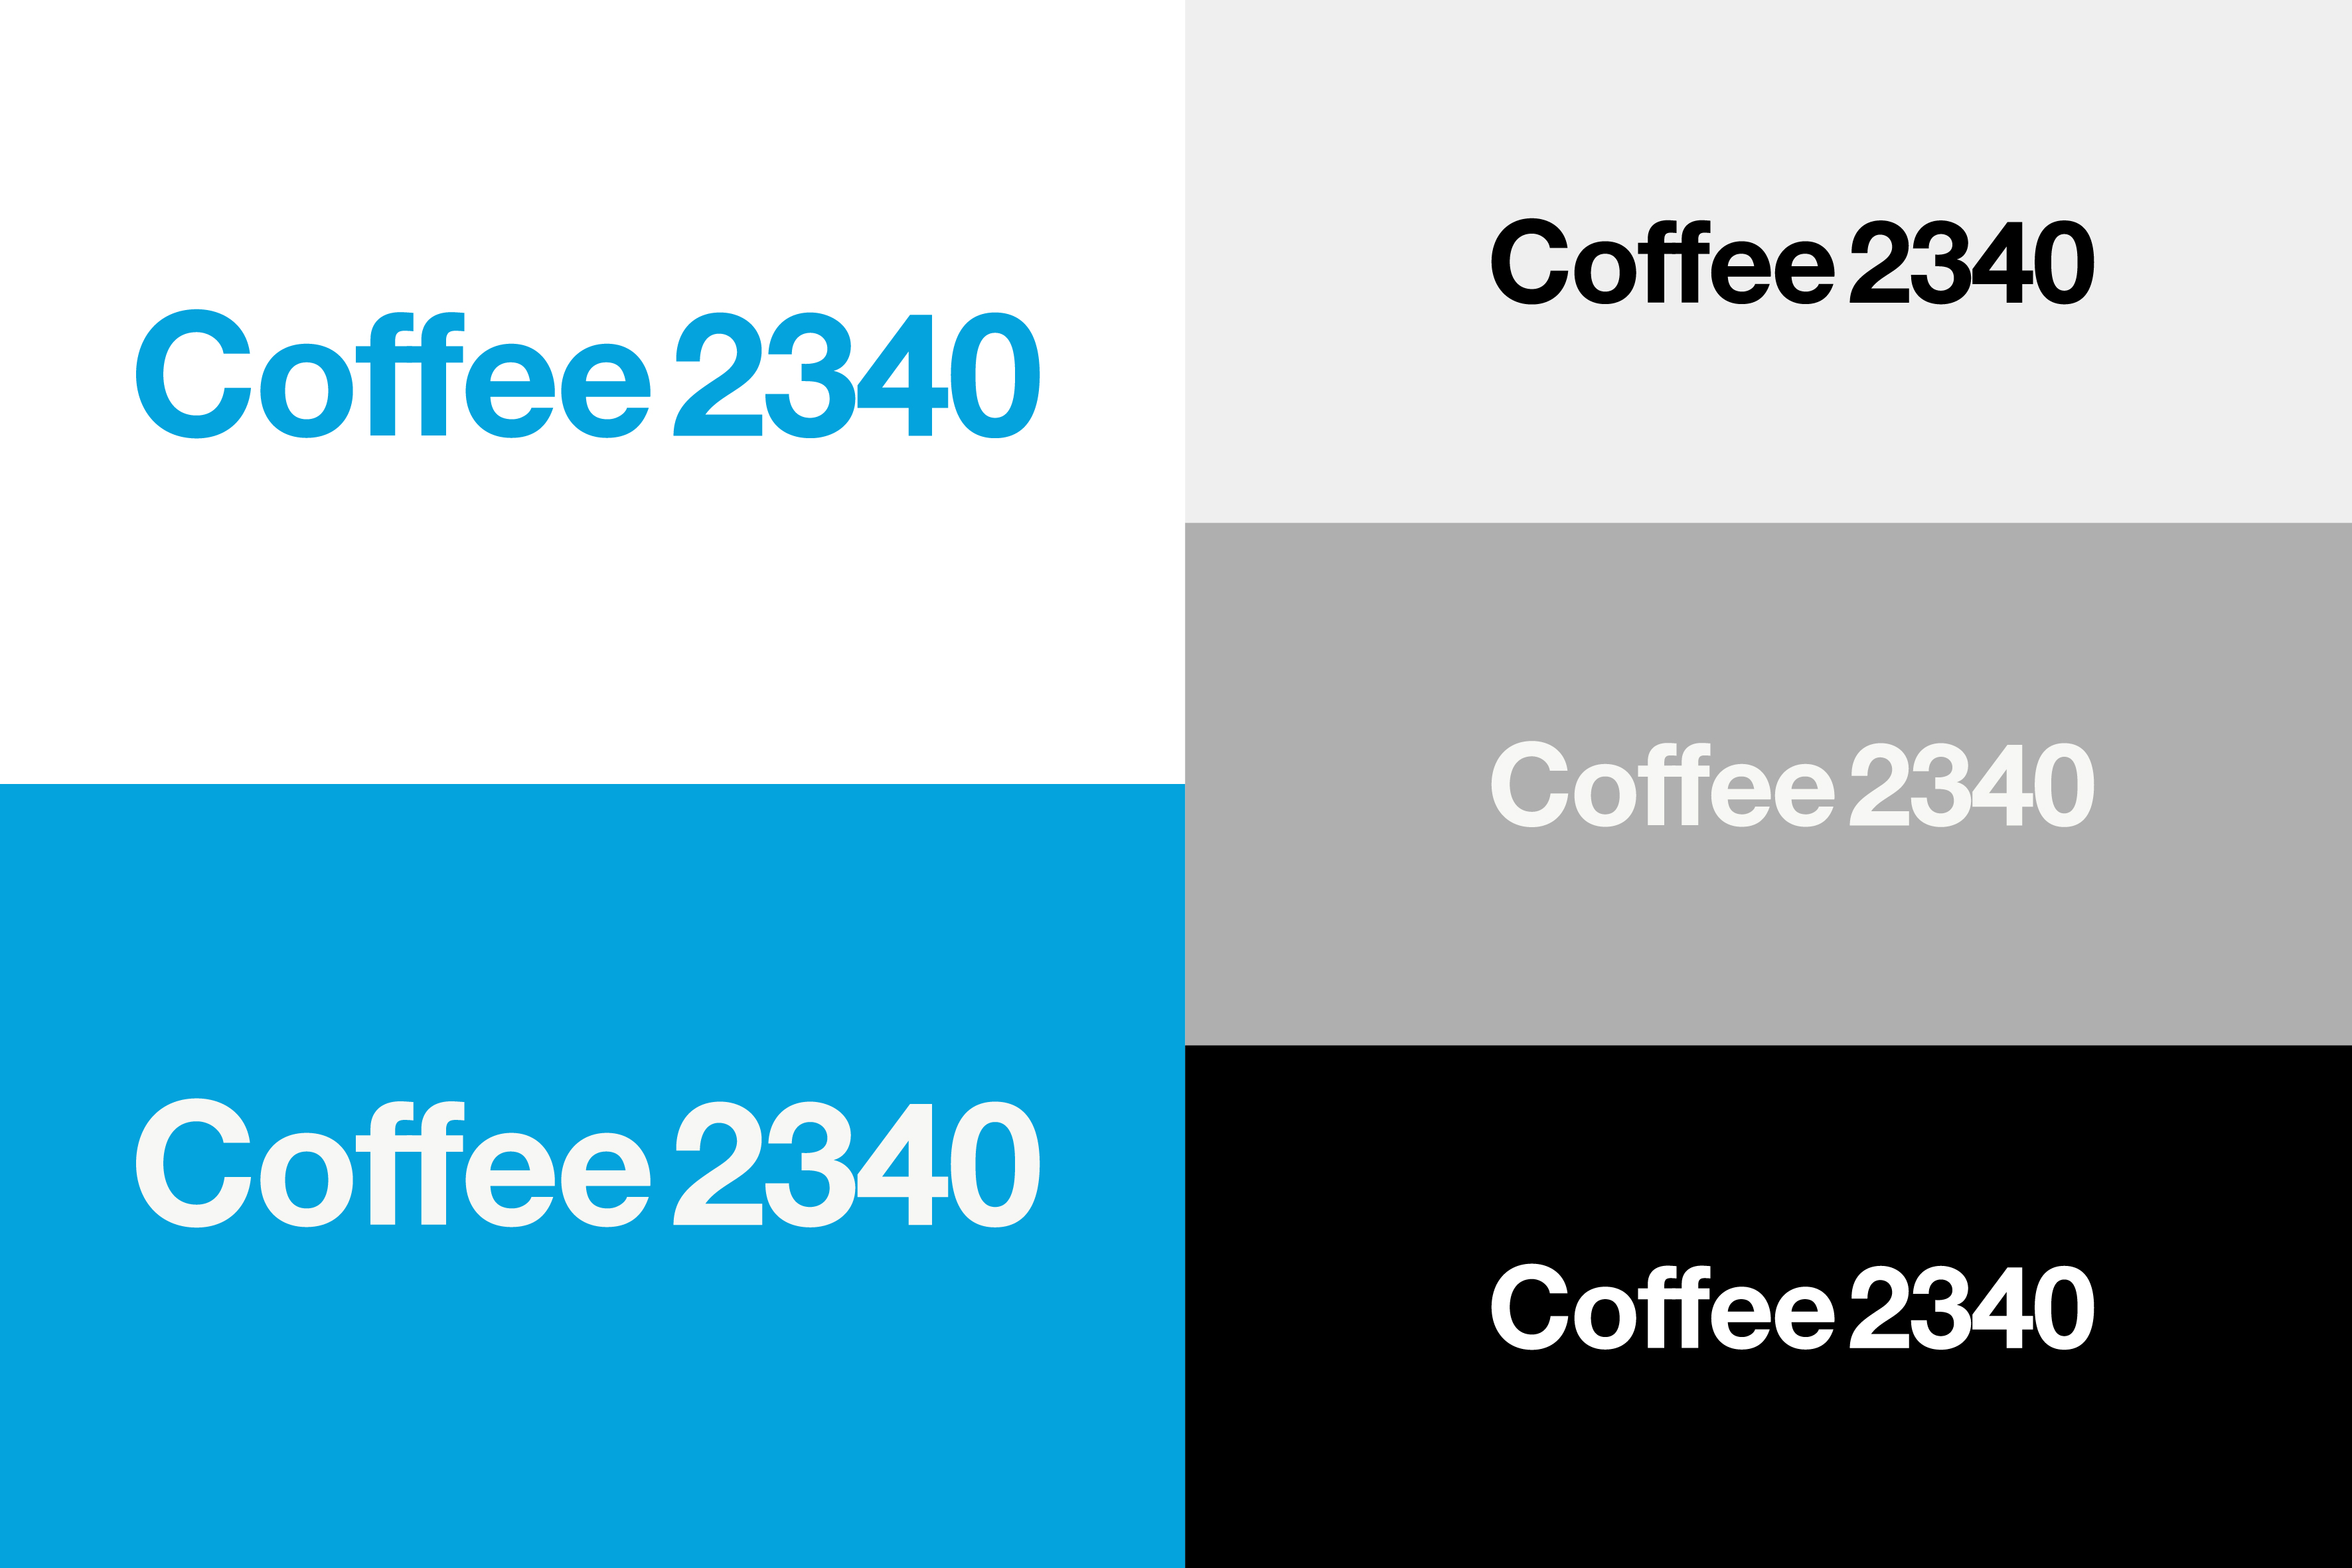 2340 coffee